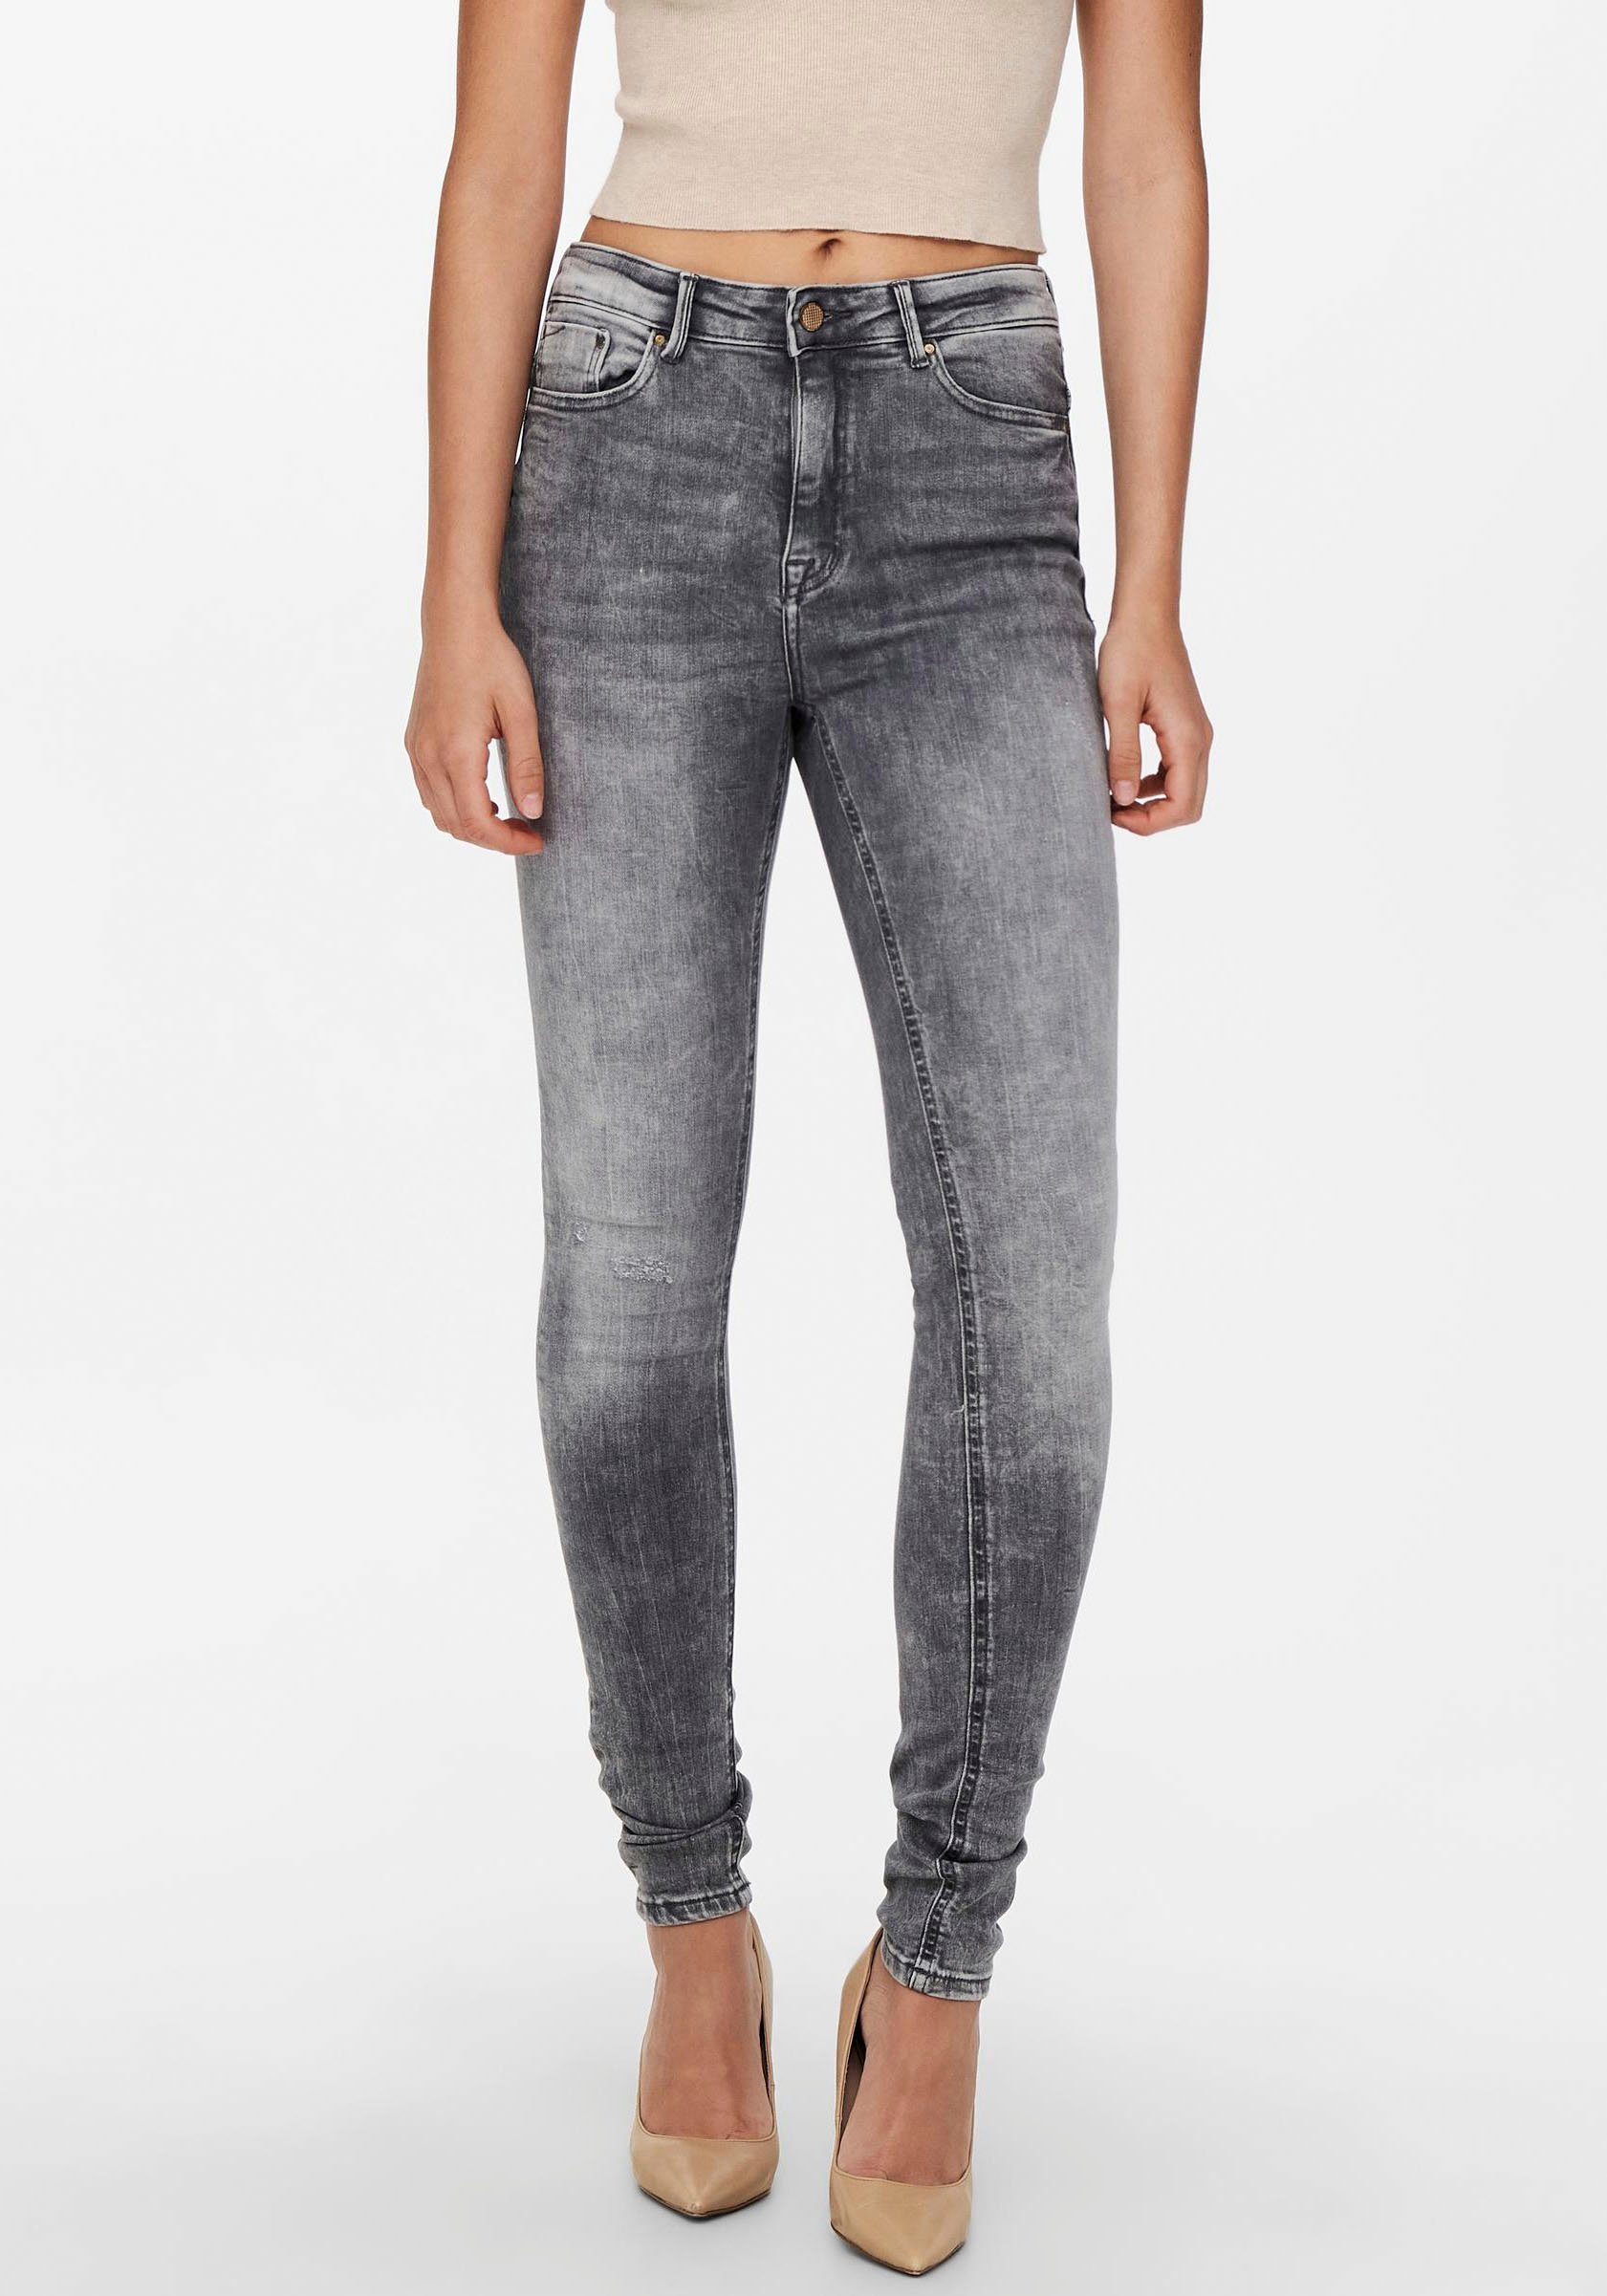 Goedaardig Inzichtelijk Tektonisch Only High-waist jeans ONLPAOLA LIFE HW SKINNY online shop | OTTO